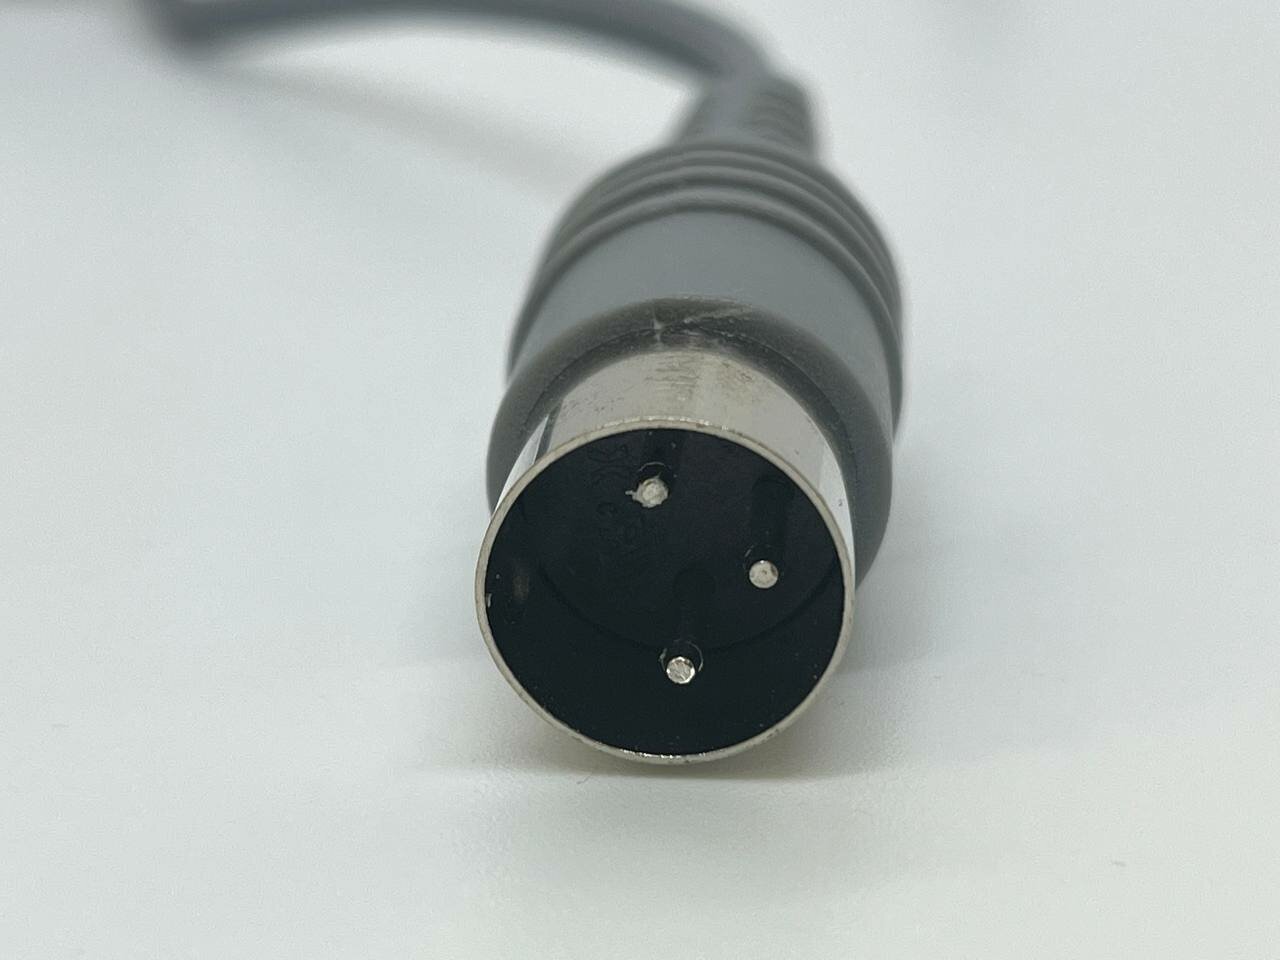 Шнур для маникюрной ручки Nail Drill, штекер с тремя контактами (3 pin), серый